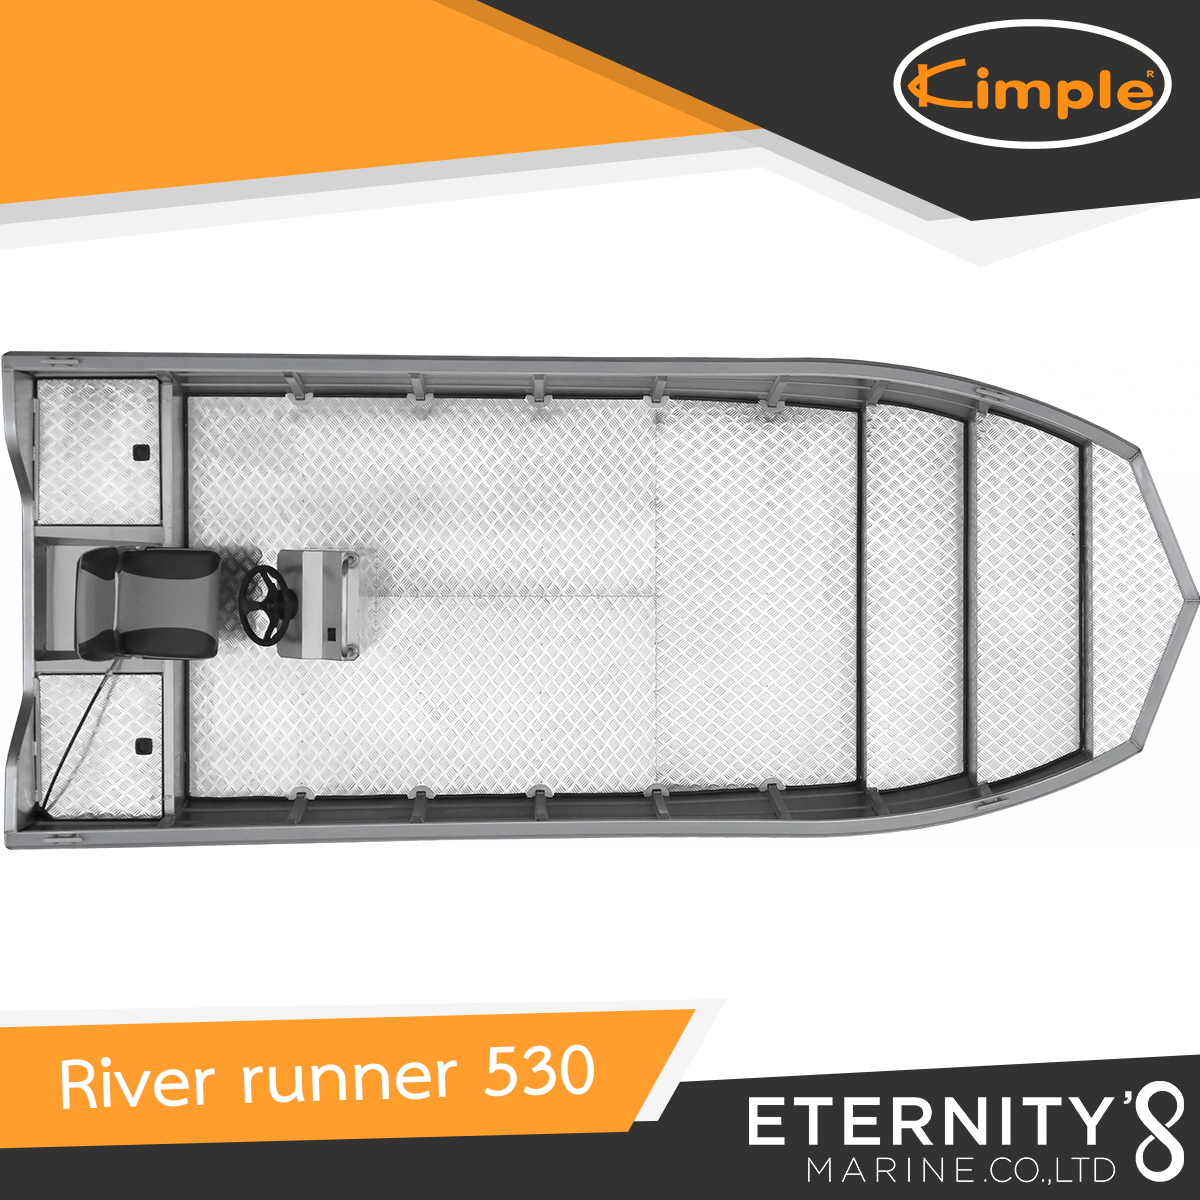 Kimple River Runner 530